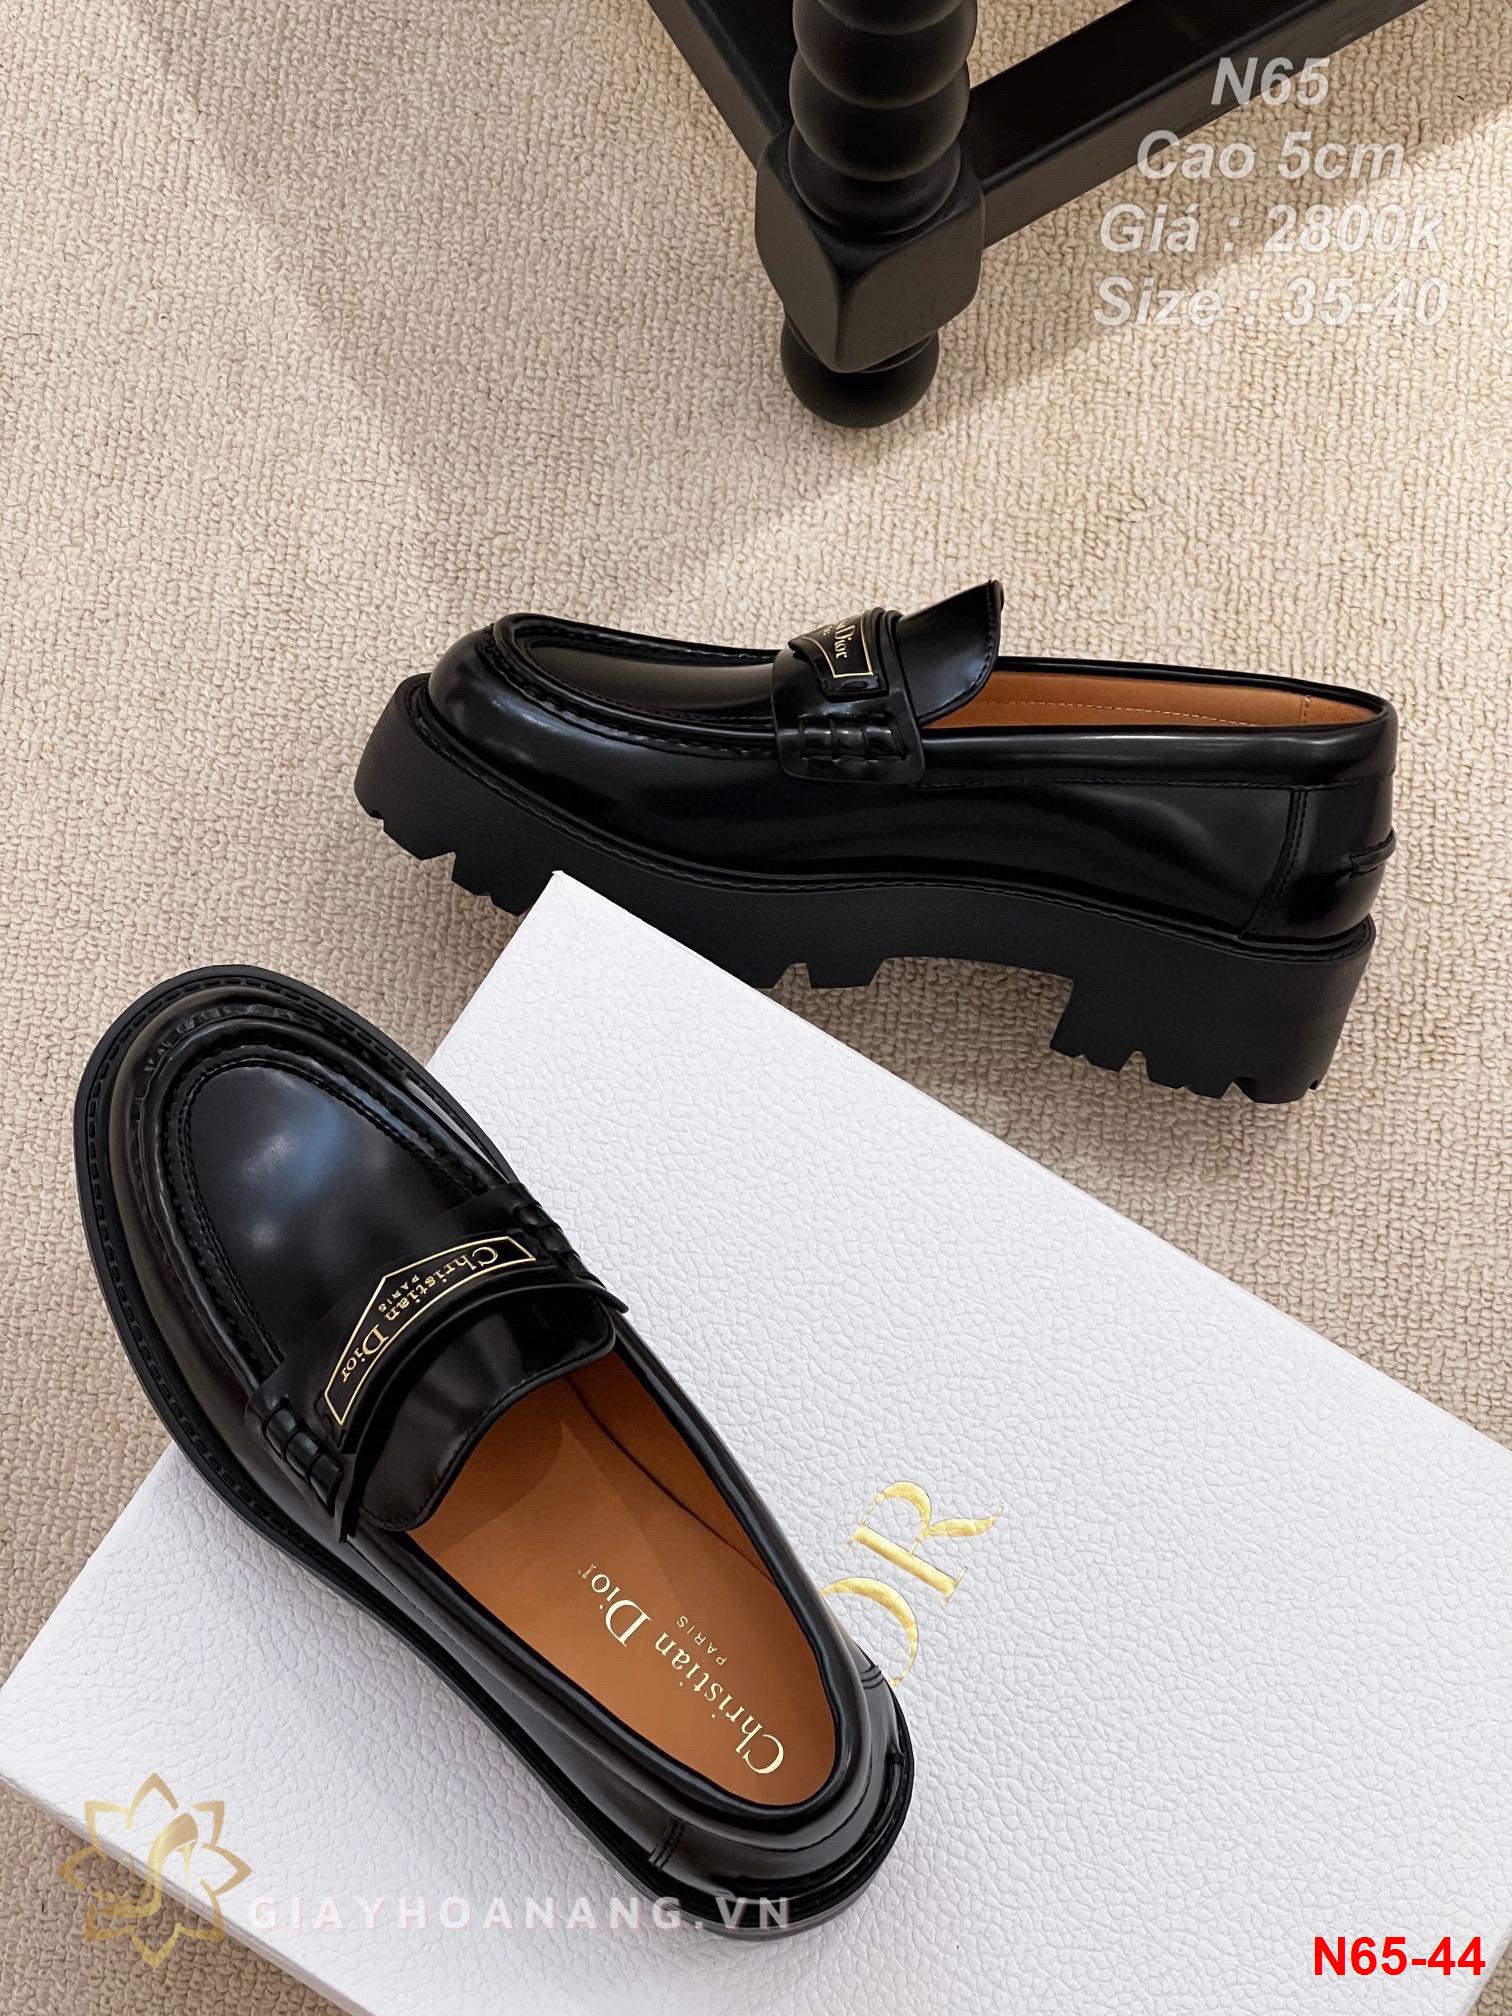 N65-44 Dior giày lười cao gót 5cm siêu cấp